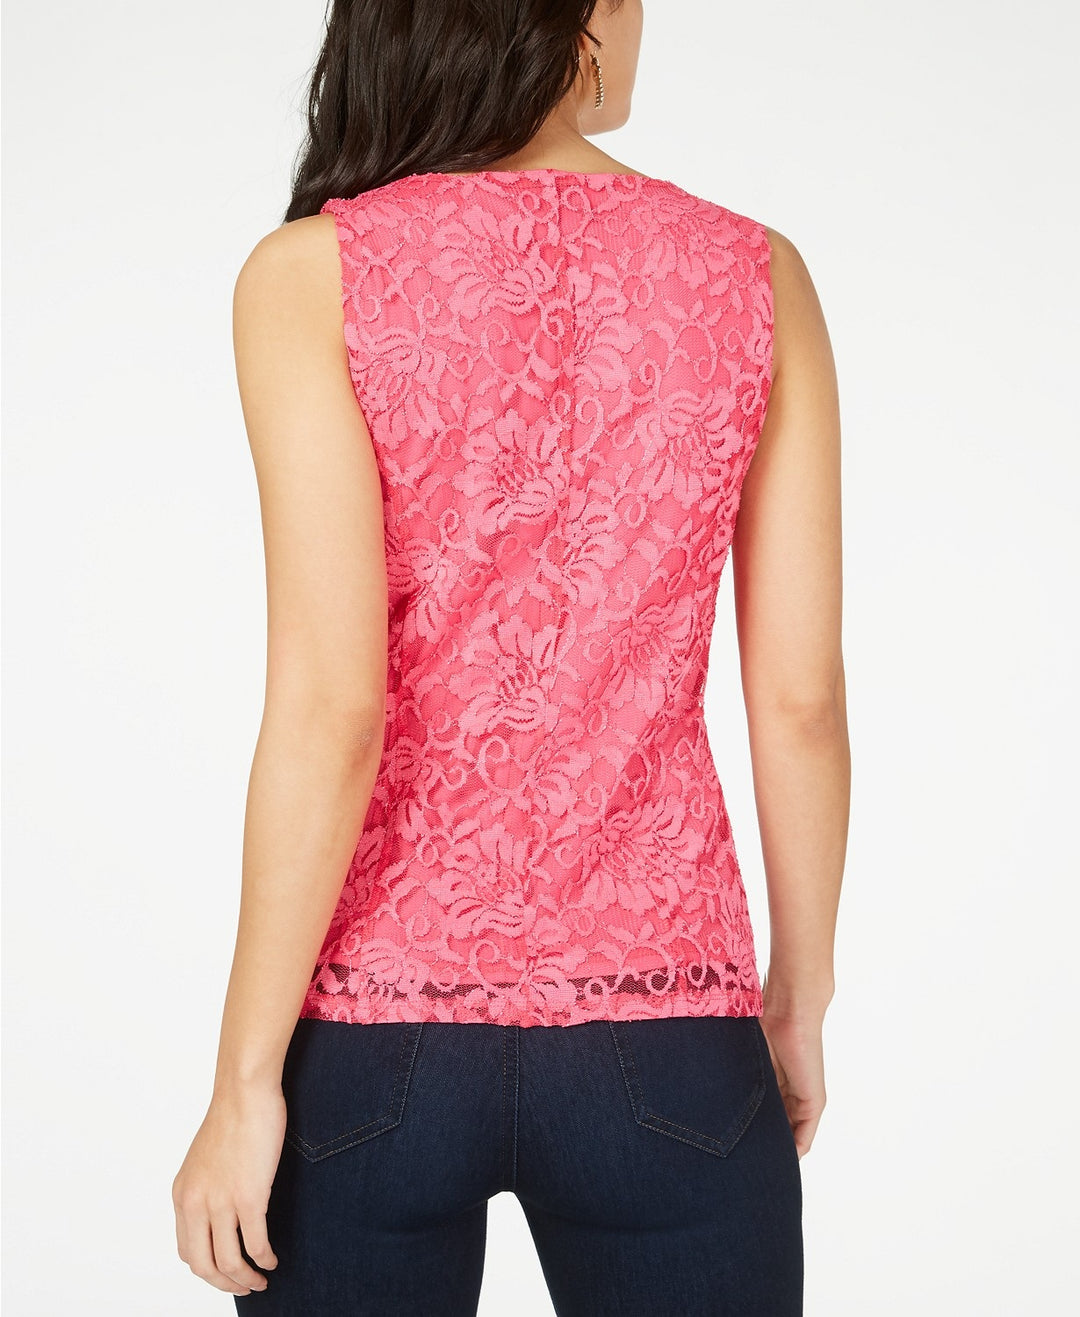 Thalia Sodi Women's Lace Zipper Front Top Pink